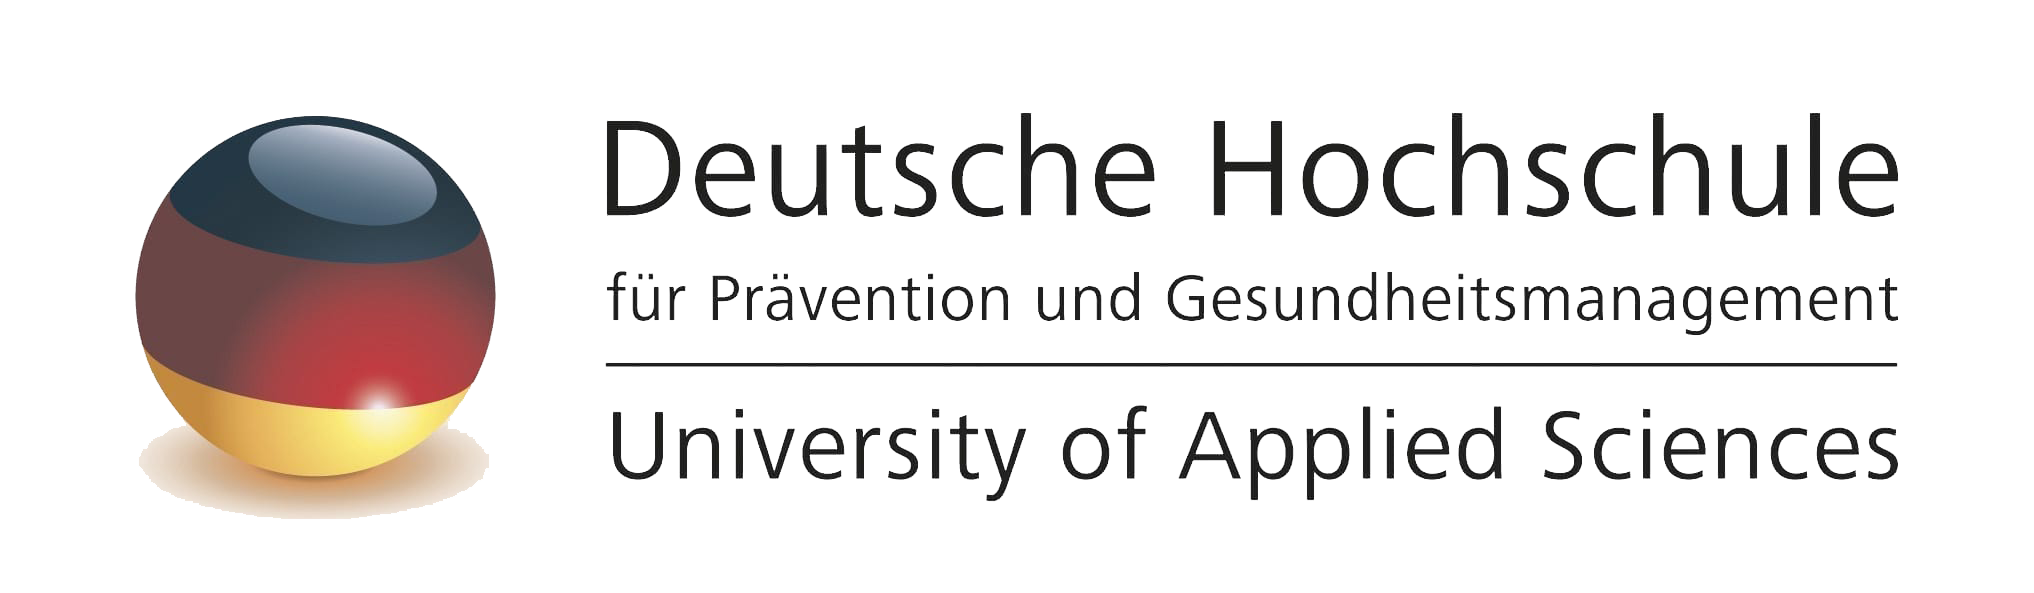 Logo der Hochschule Deutsche Hochschule für Prävention und Gesundheitsmanagement